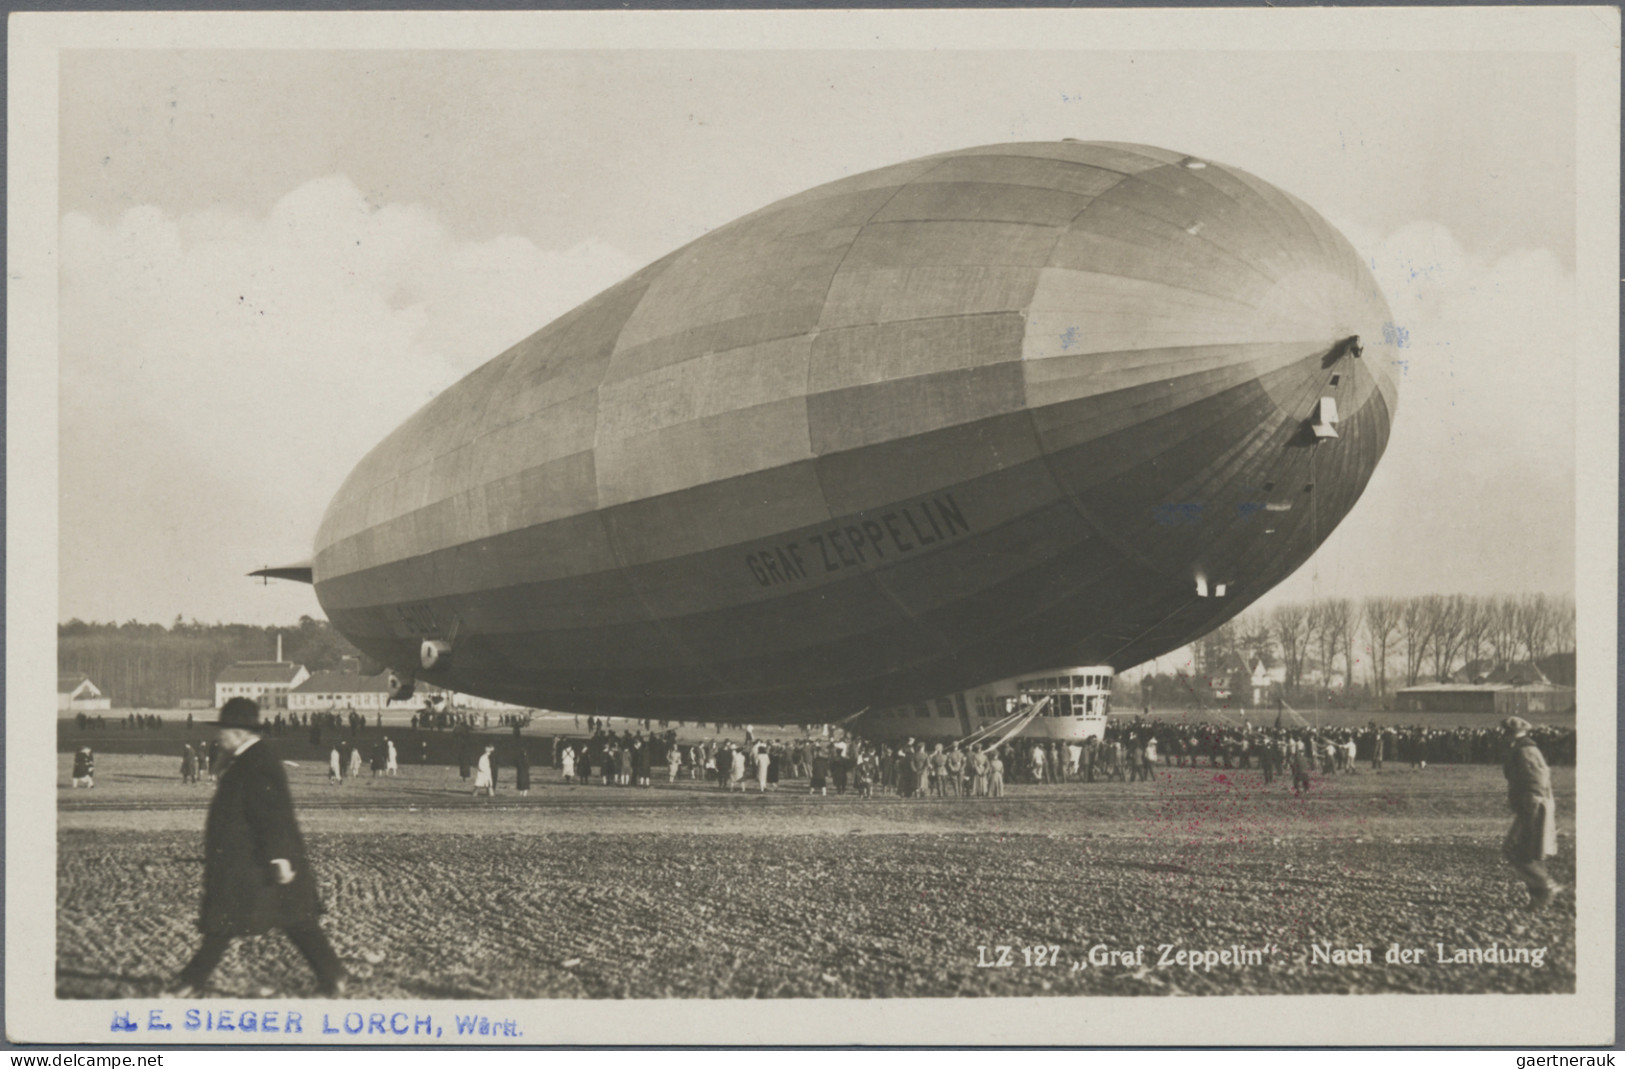 Zeppelin Mail - Germany: 1931, Polarfahrt, Zwei Werte Zu 1 M Auf Schöner Zeppeli - Airmail & Zeppelin